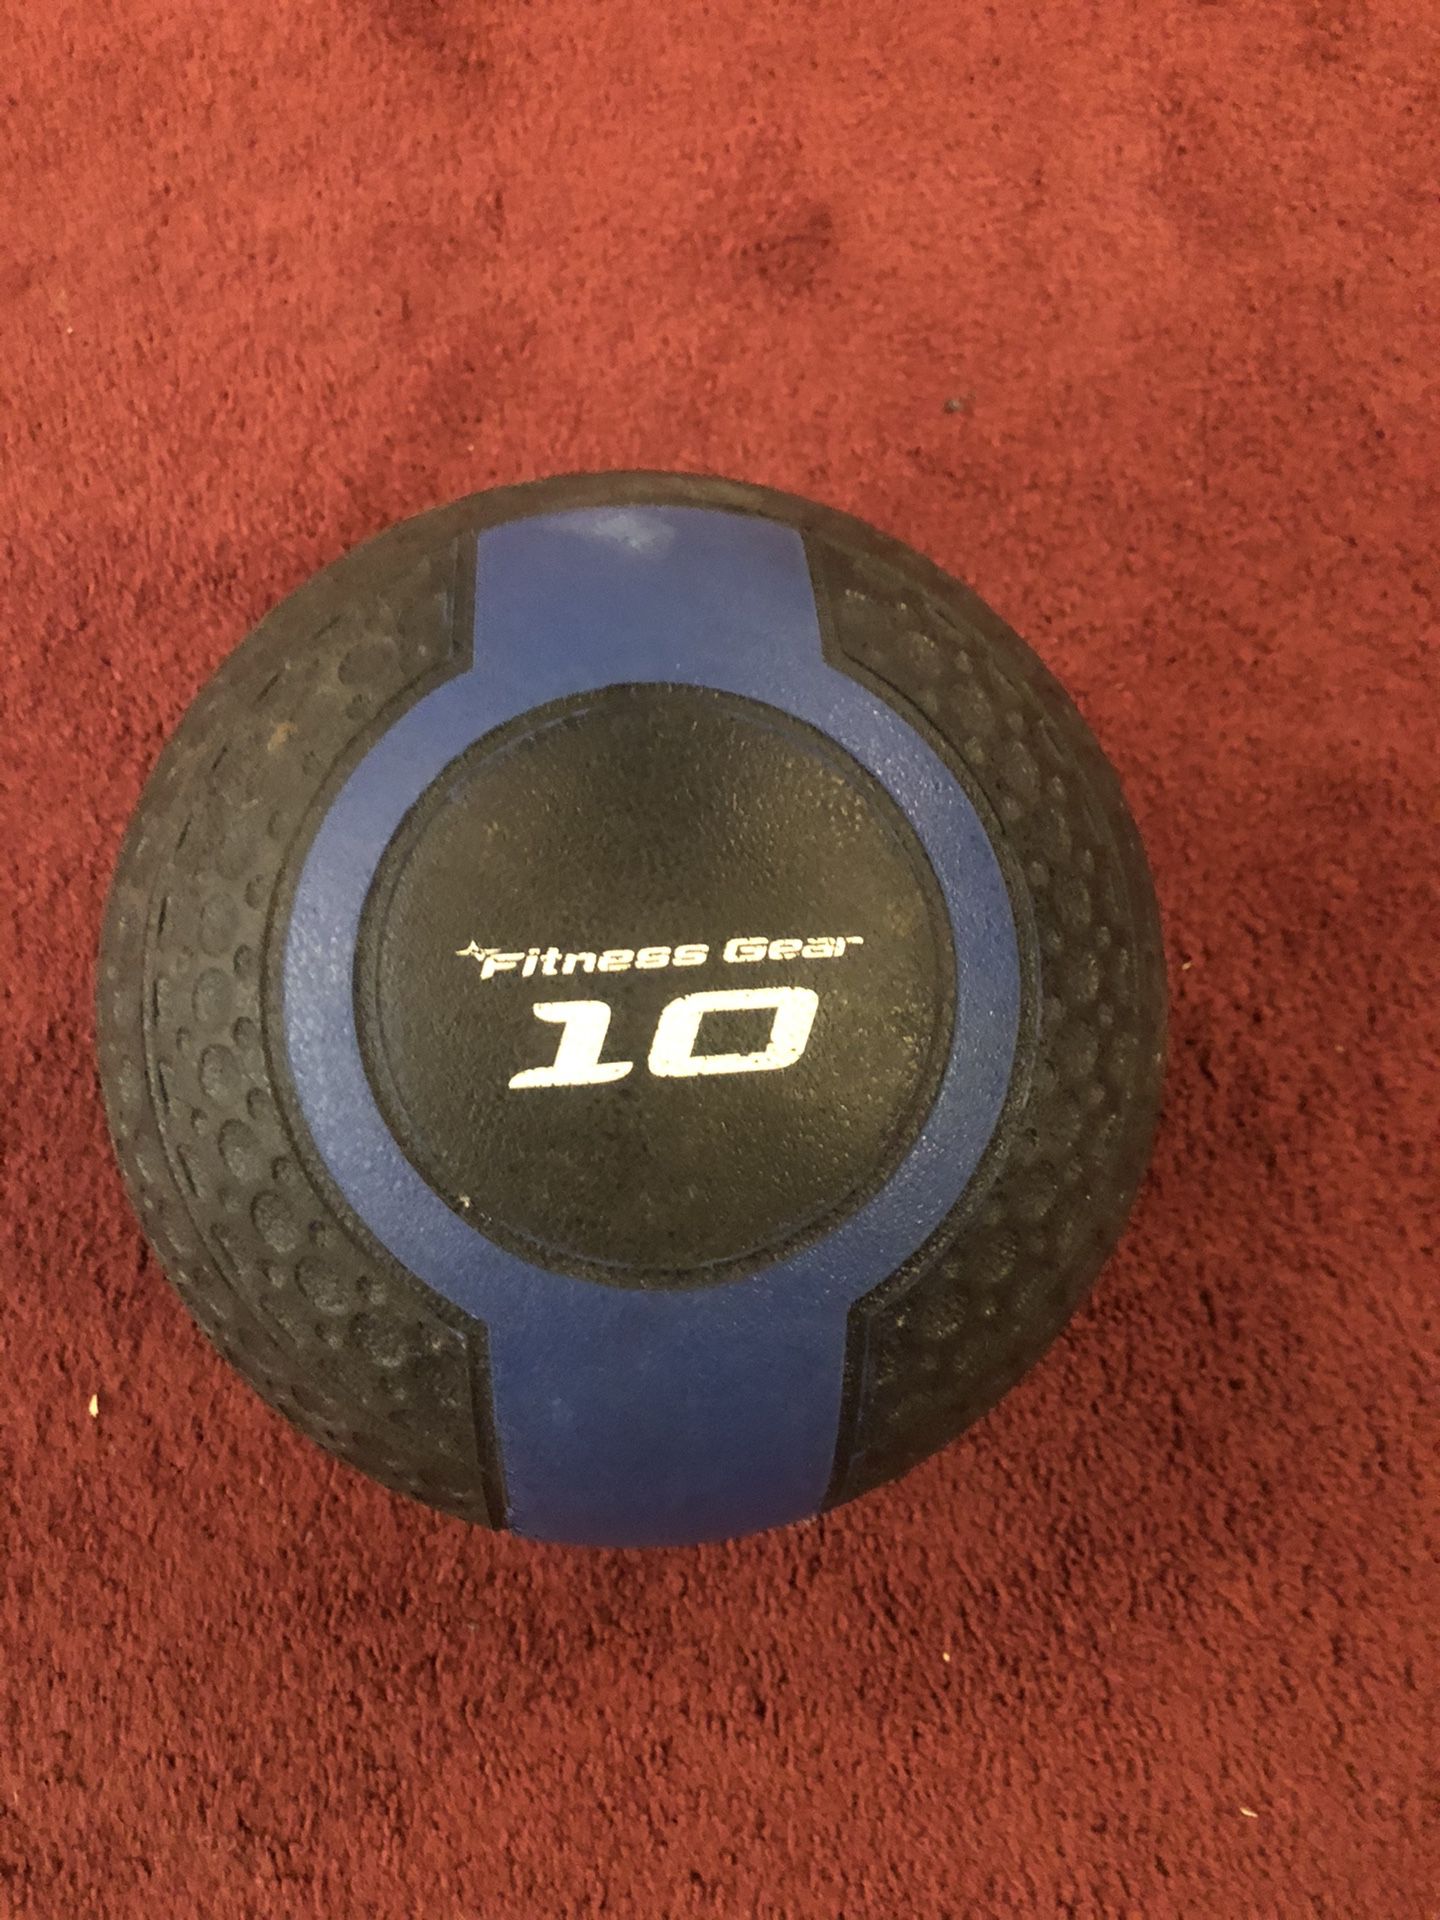 Fitness Gear 10 lb Medicine Ball